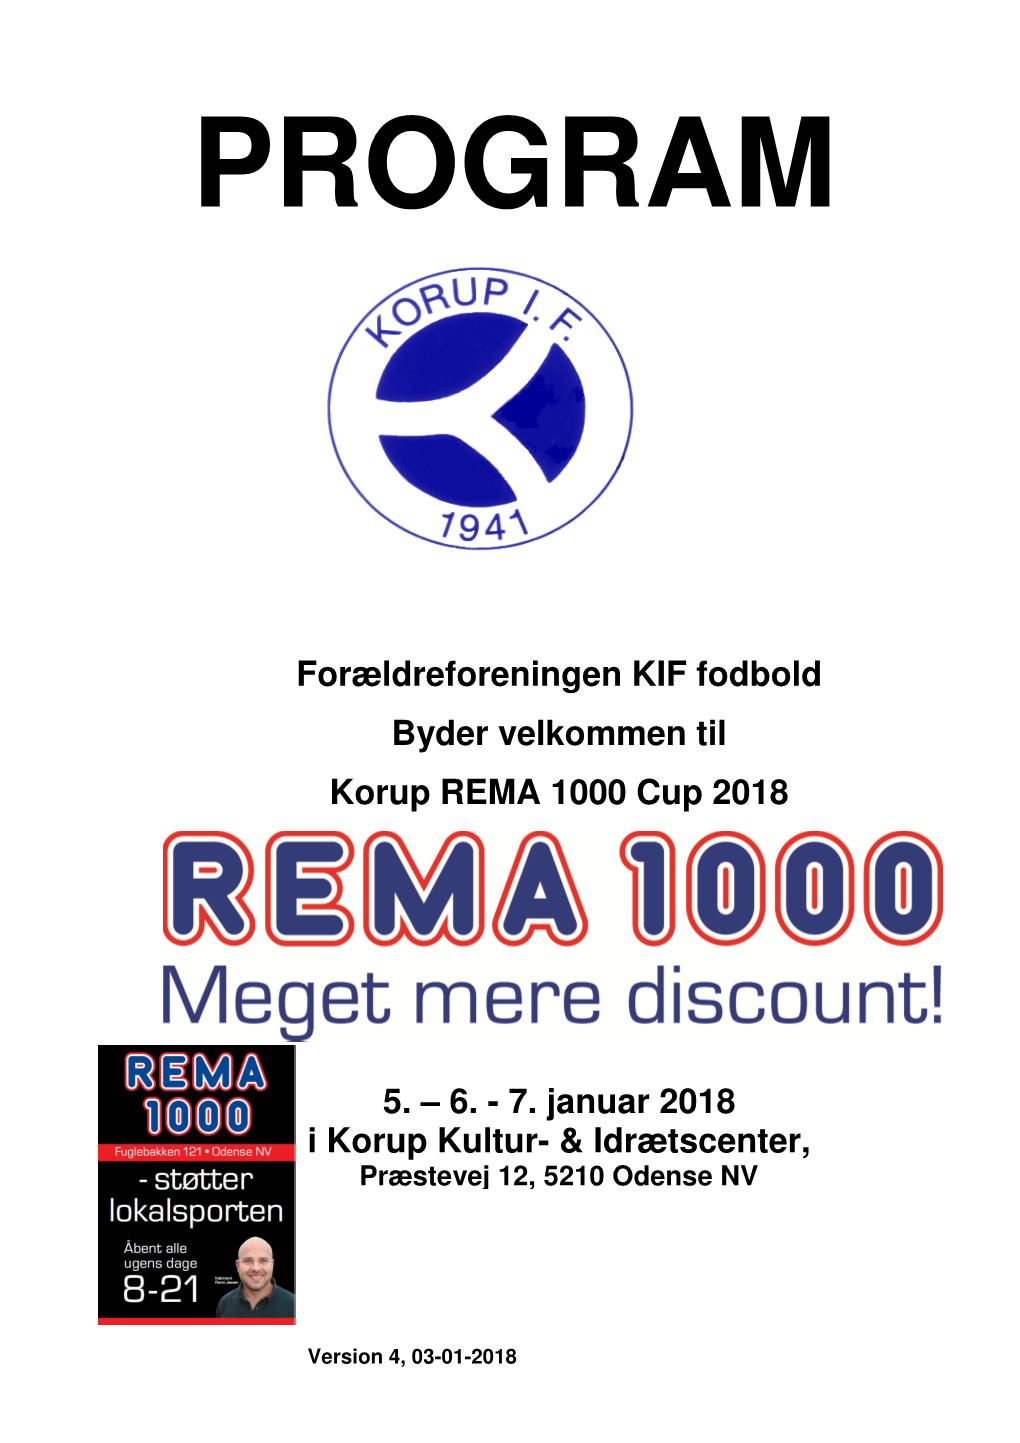 Forældreforeningen KIF Fodbold Byder Velkommen Til Korup REMA 1000